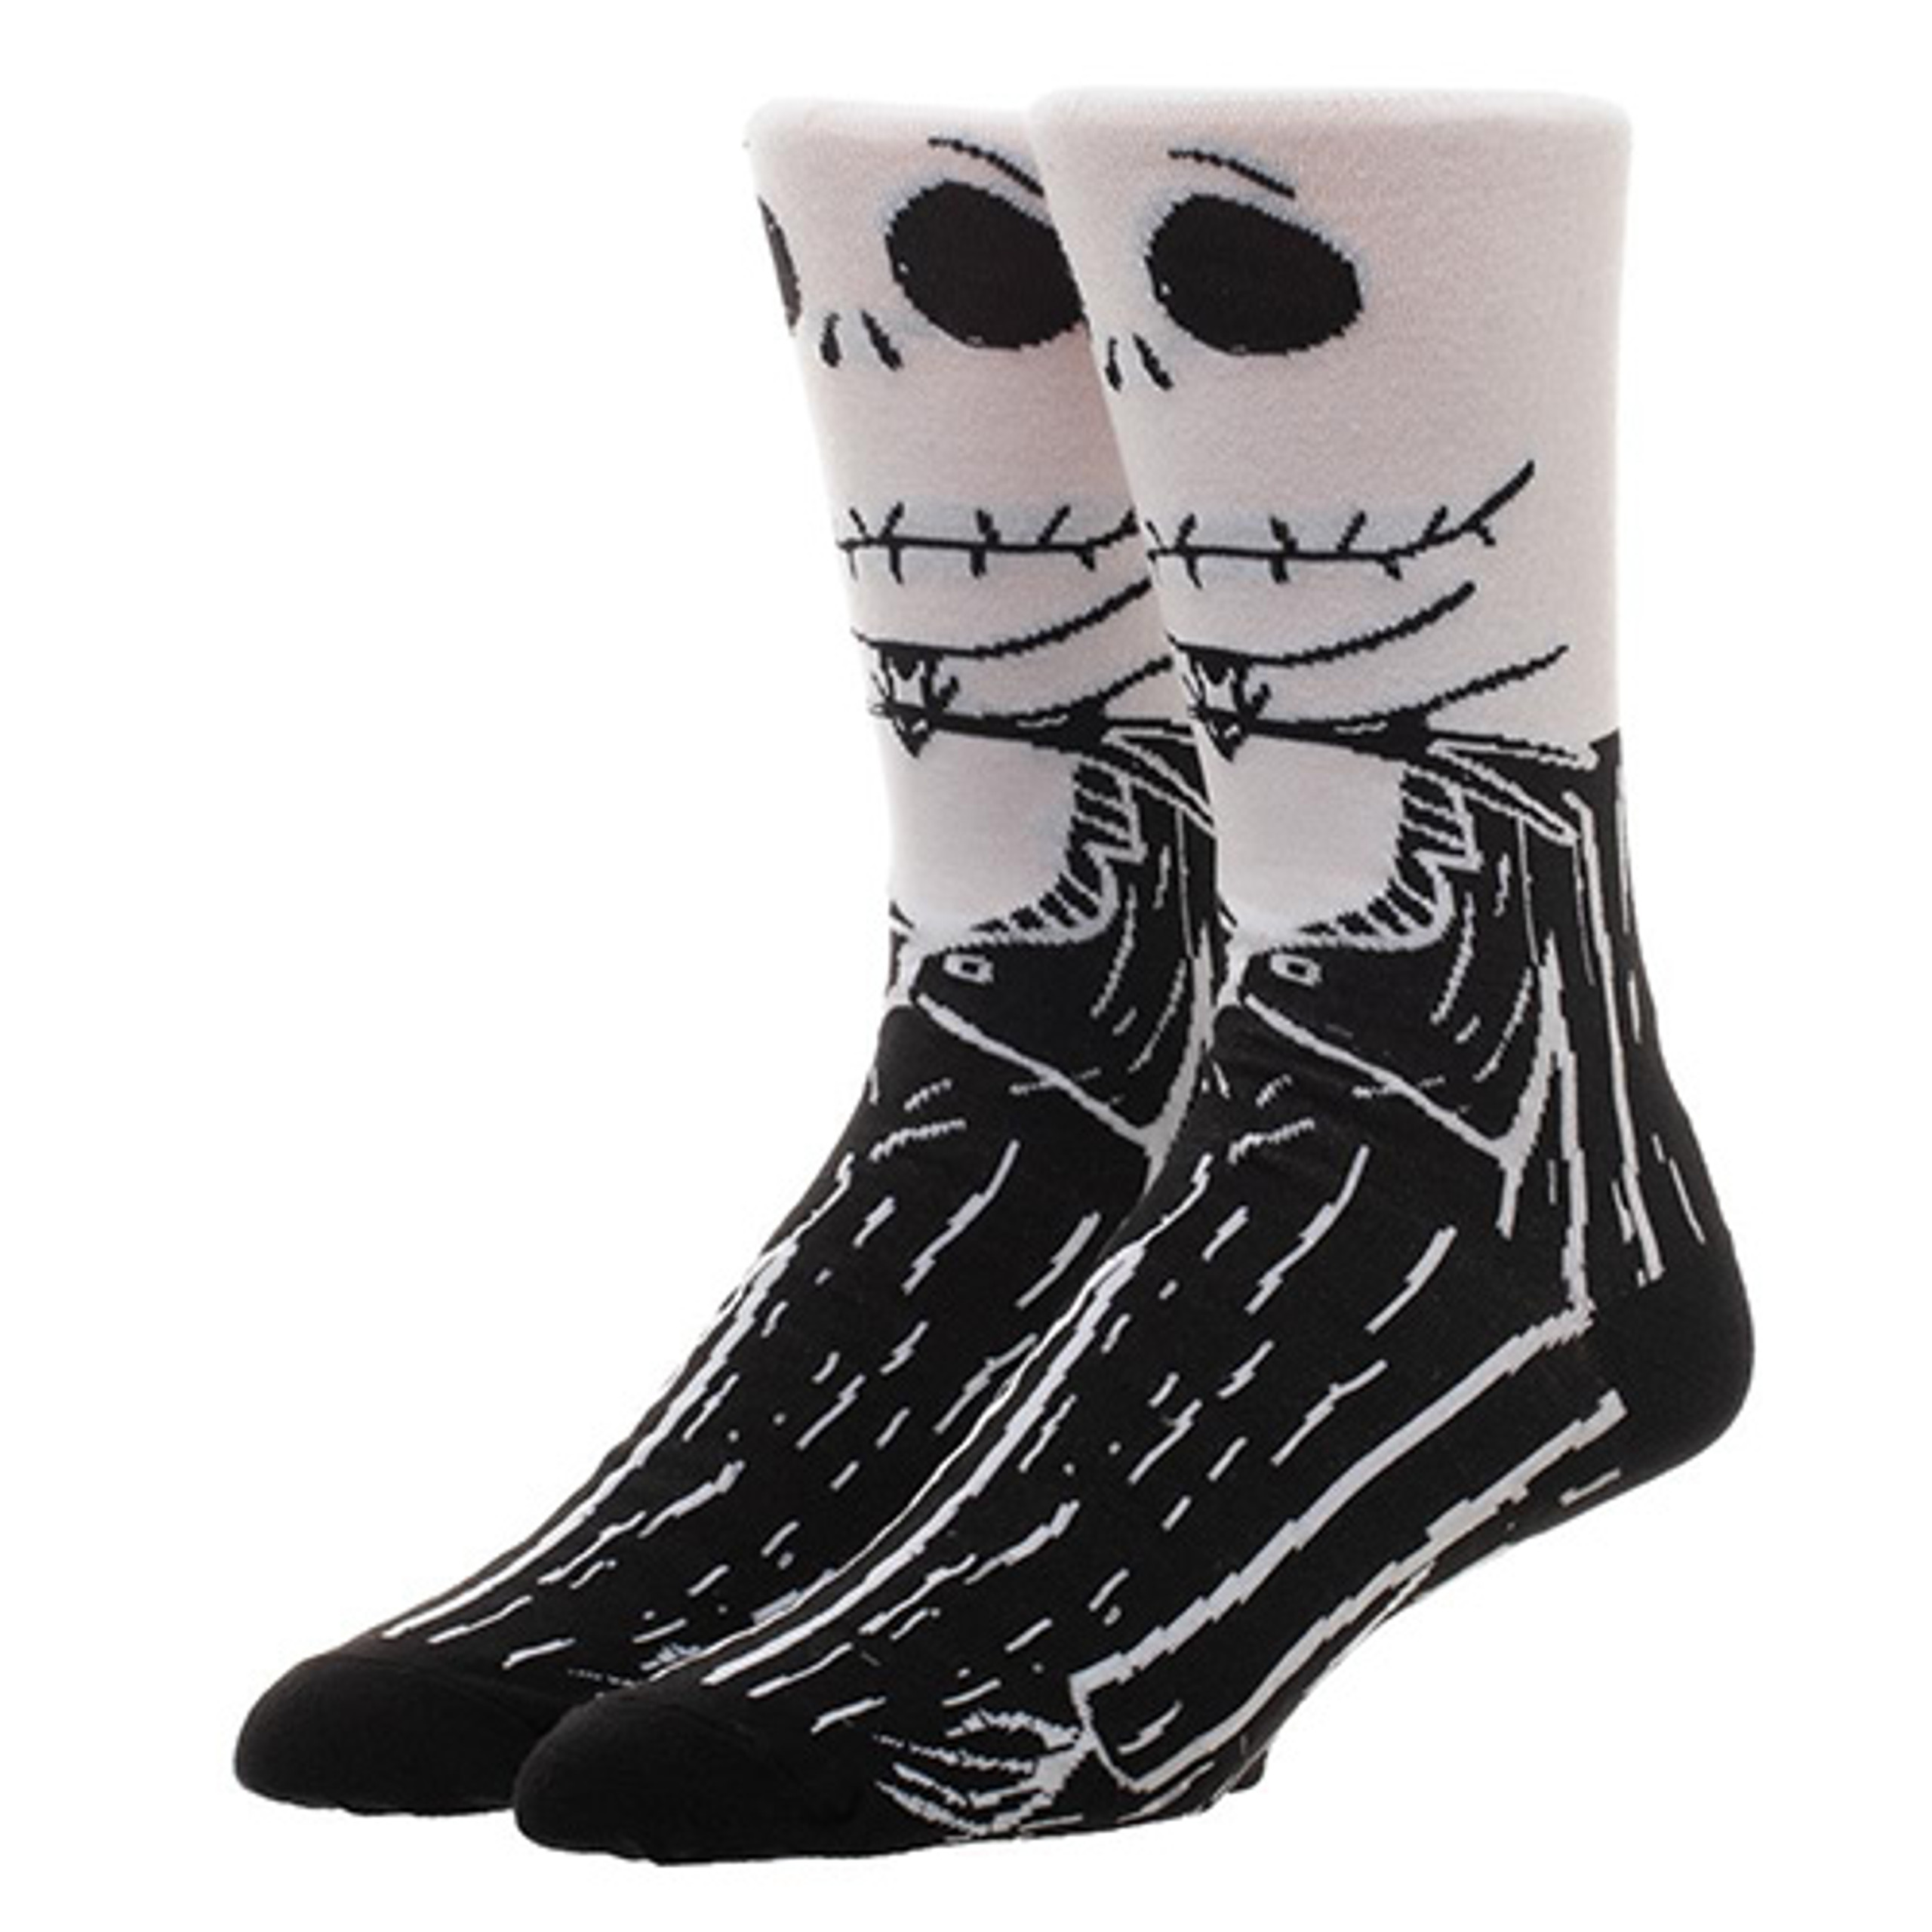 Nightmare Before Christmas Over The Knee Socks | Sock Em' Sock Emporium